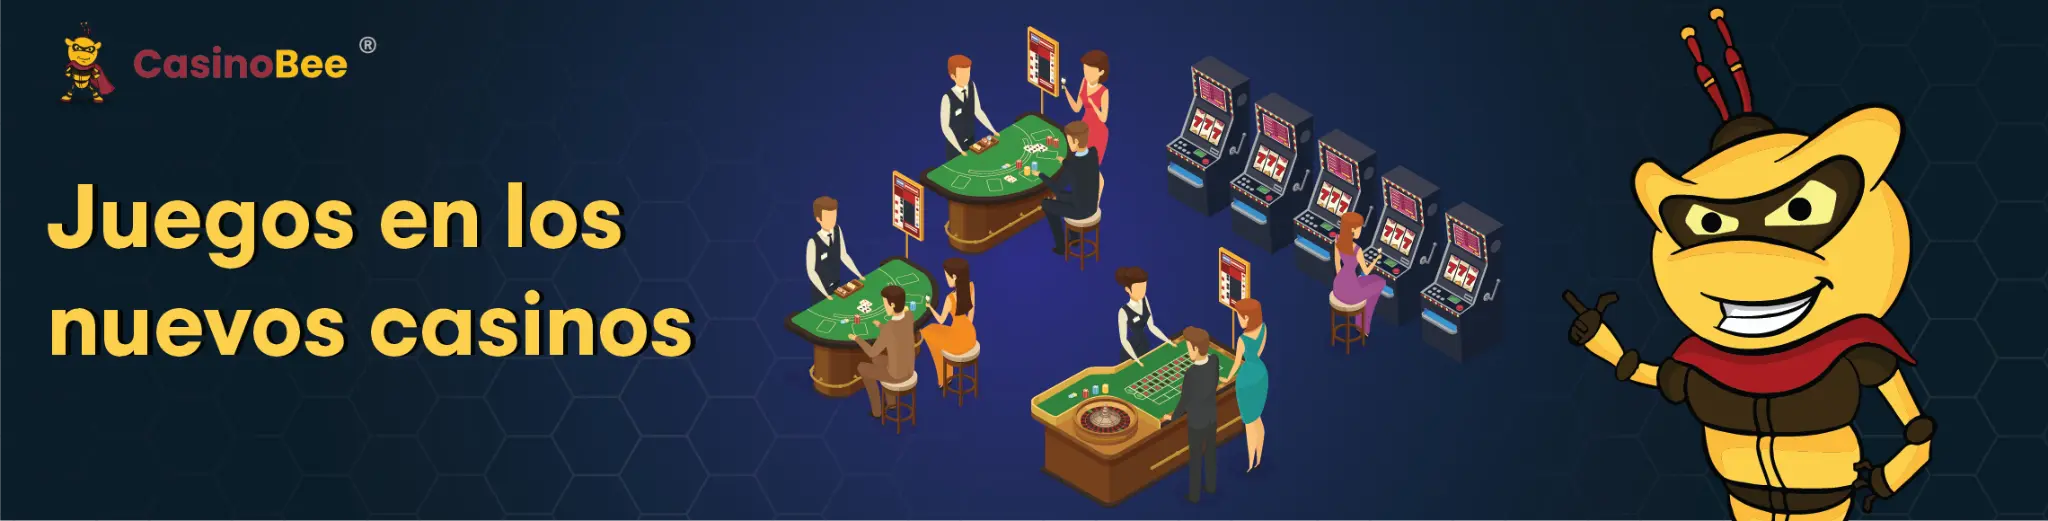 juegos en los nuevos casinos